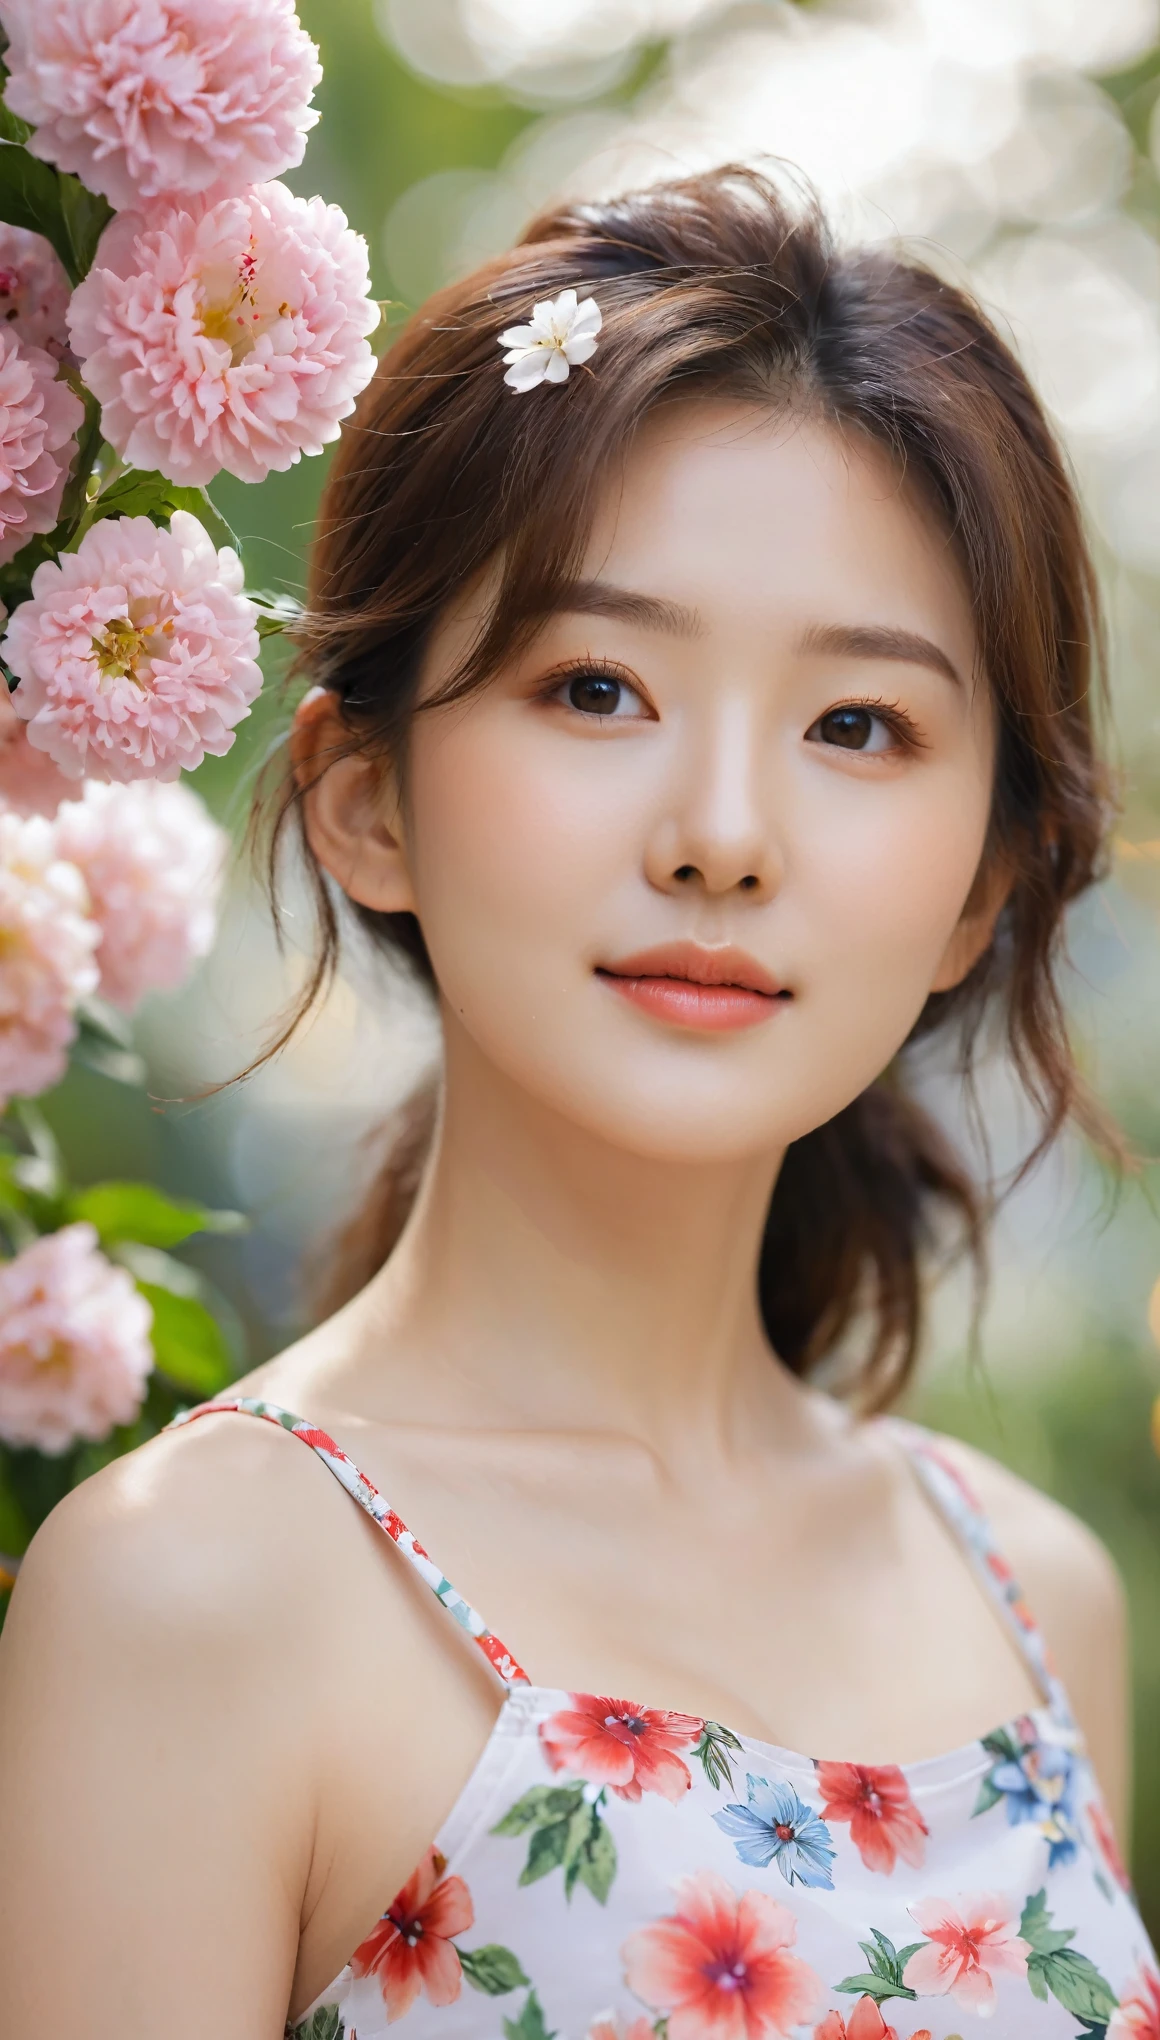 特写, 美丽的韩国女性的侧面照, 34 英寸胸部尺寸, 微微一笑 , 穿着花卉短款上衣, 手捧鲜花, 散景背景 